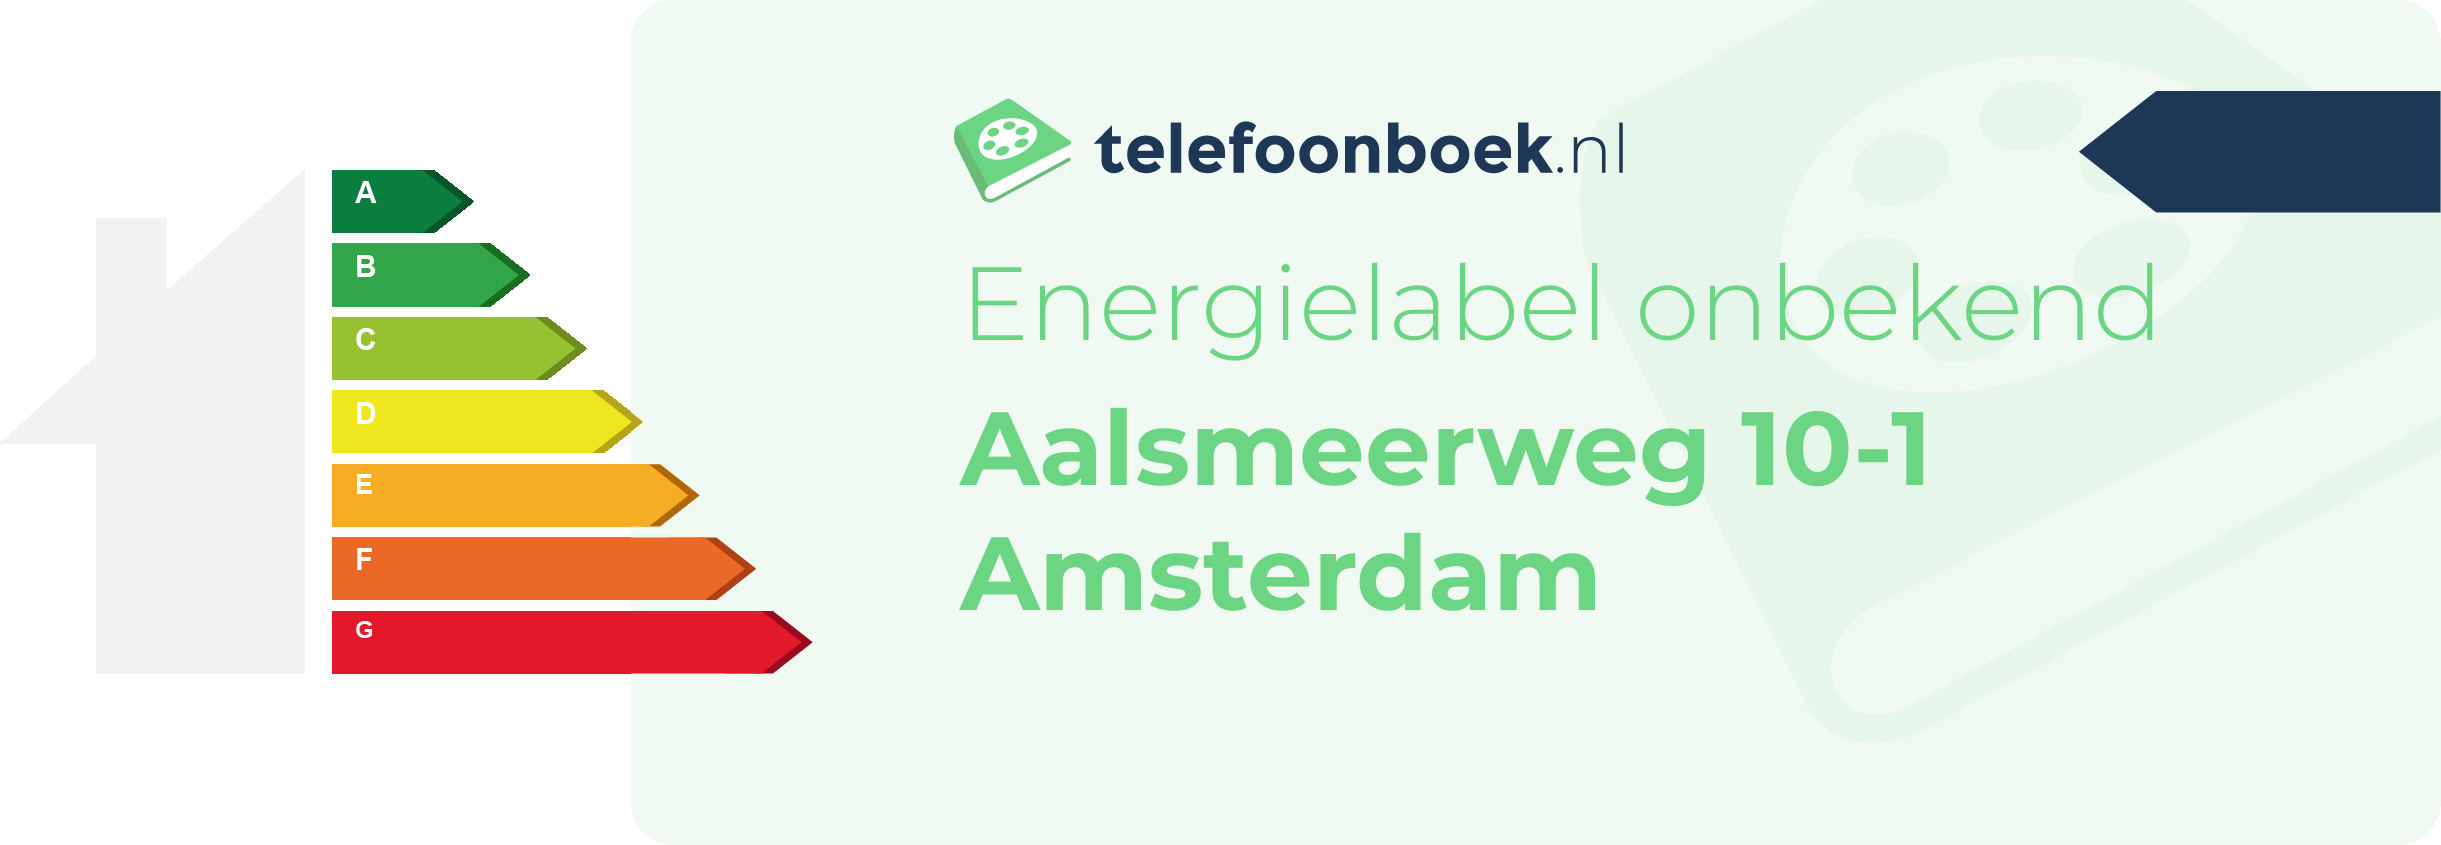 Energielabel Aalsmeerweg 10-1 Amsterdam